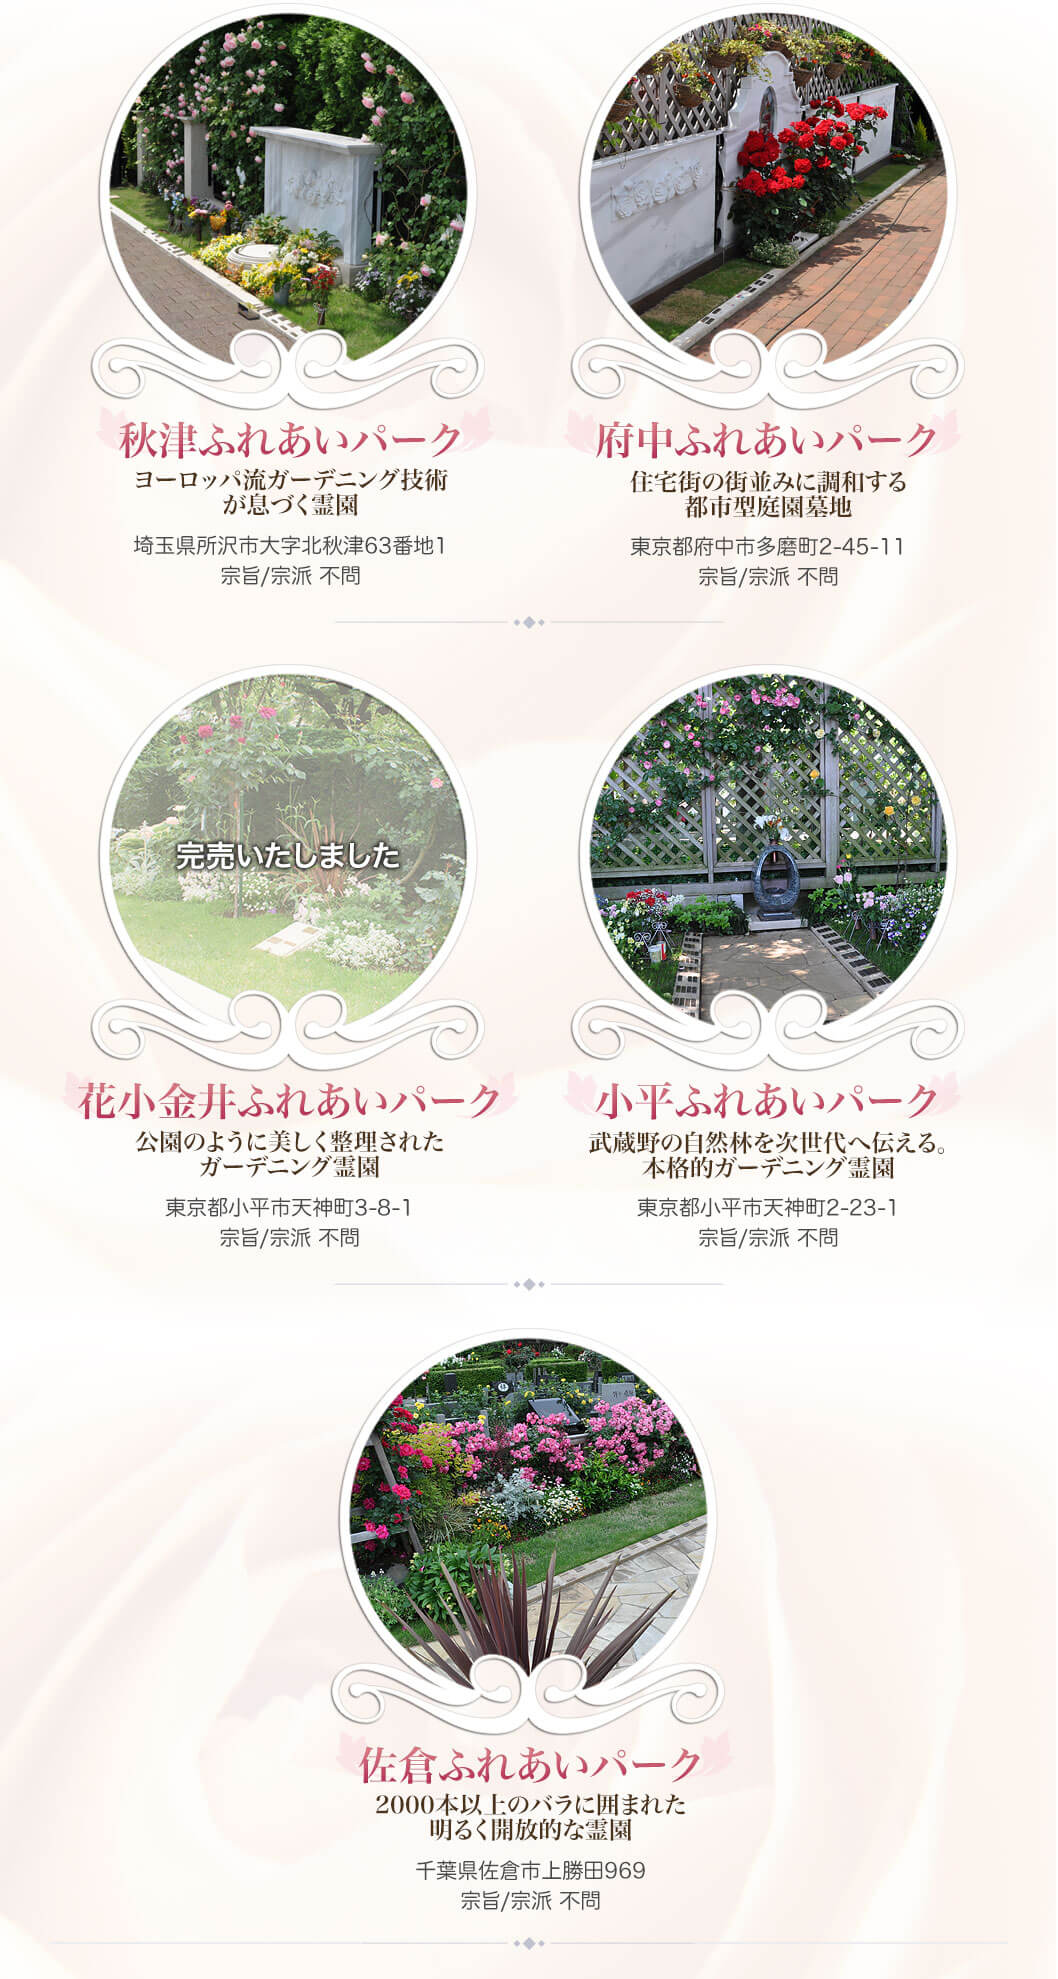 樹木葬「ダイアナ」はバラの樹の下で眠るというコンセプトでつくられた日本で初めての“バラの樹木葬”です。故人の思いを、バラの花などが美しく彩ります。